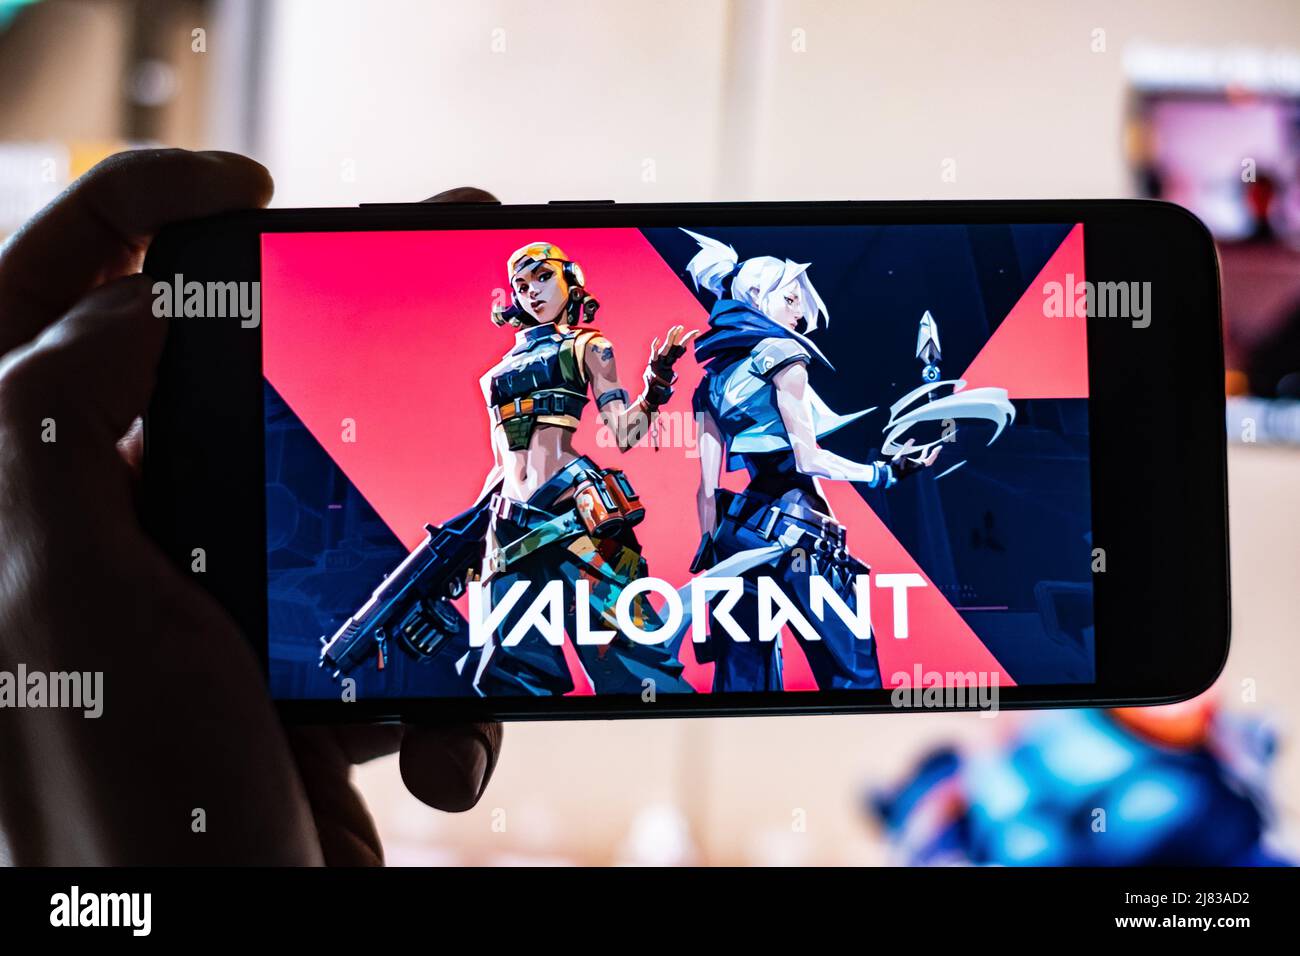 Valorant Game Title è mostrato sullo schermo del telefono cellulare con Twitch Streamer gioco in background. Un gioco realizzato da Riot Games a Los Angeles. Foto Stock